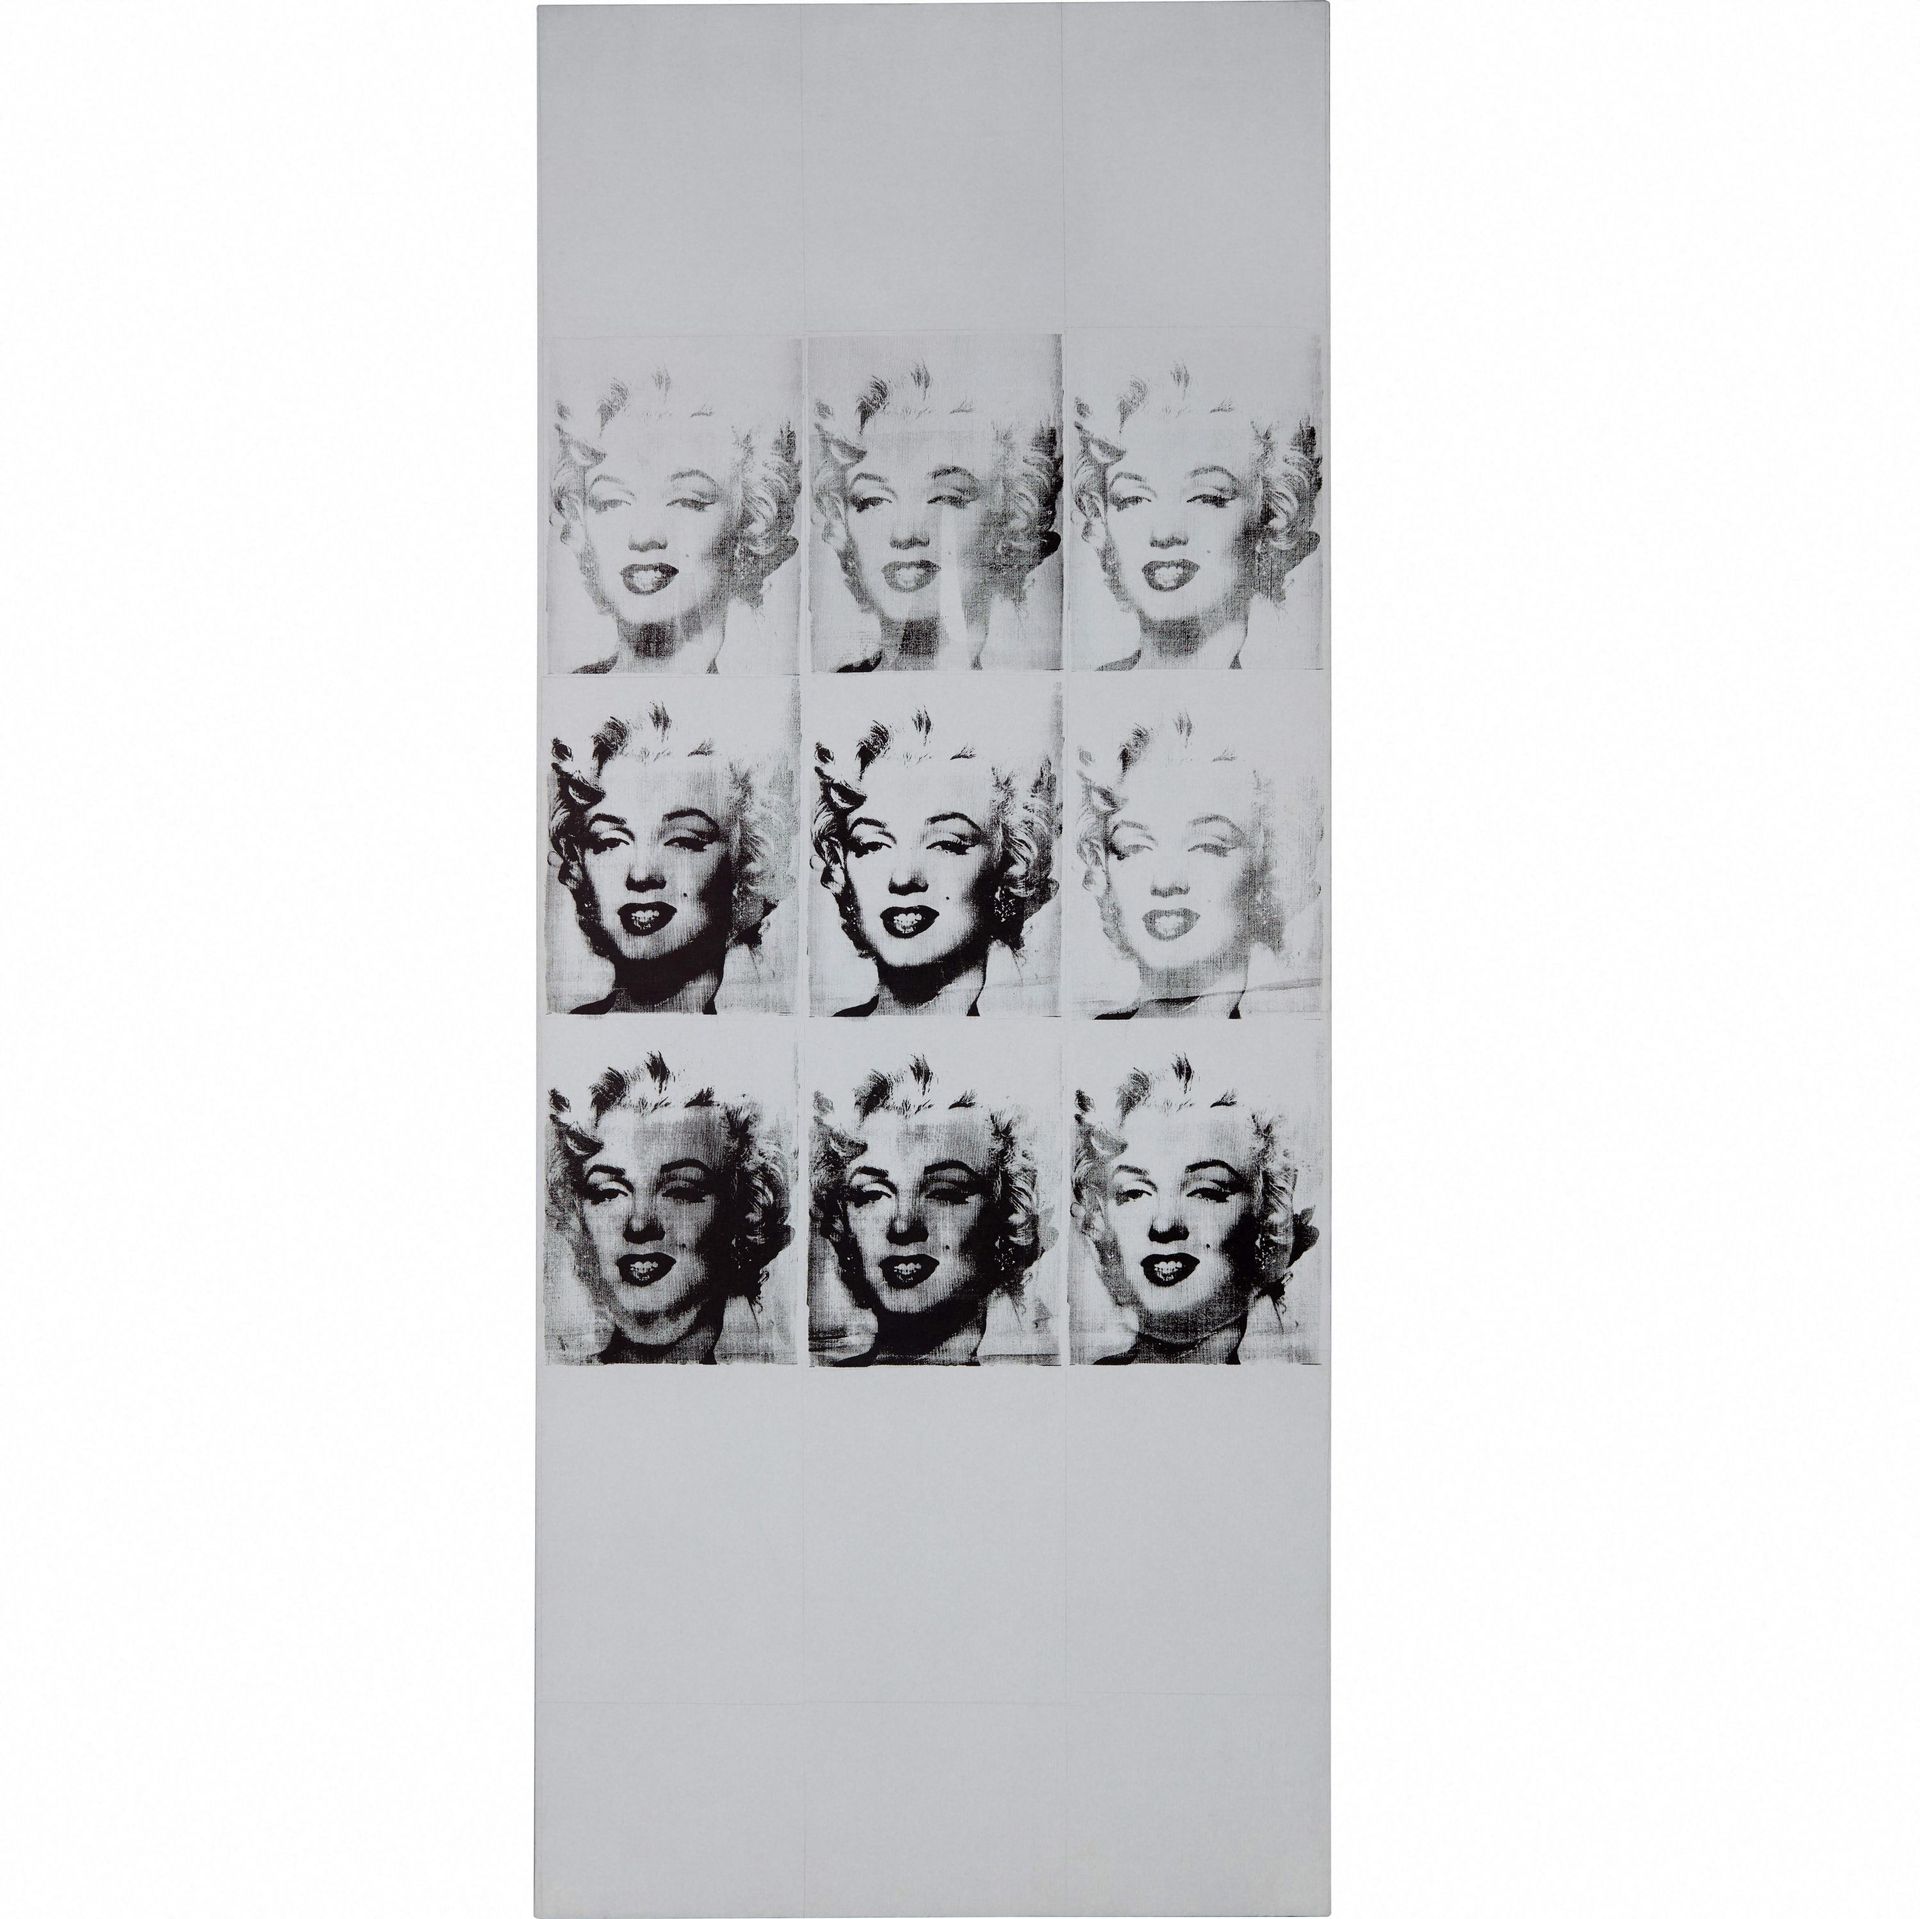 Cette image non datée reproduite avec l'aimable autorisation de Sotheby's montre "Nine Marilyns" d'Andy Warhol, datant de 1962 et faisant partie de la collection Macklowe avec une valeur estimée entre 40 et 60 millions de dollars. 